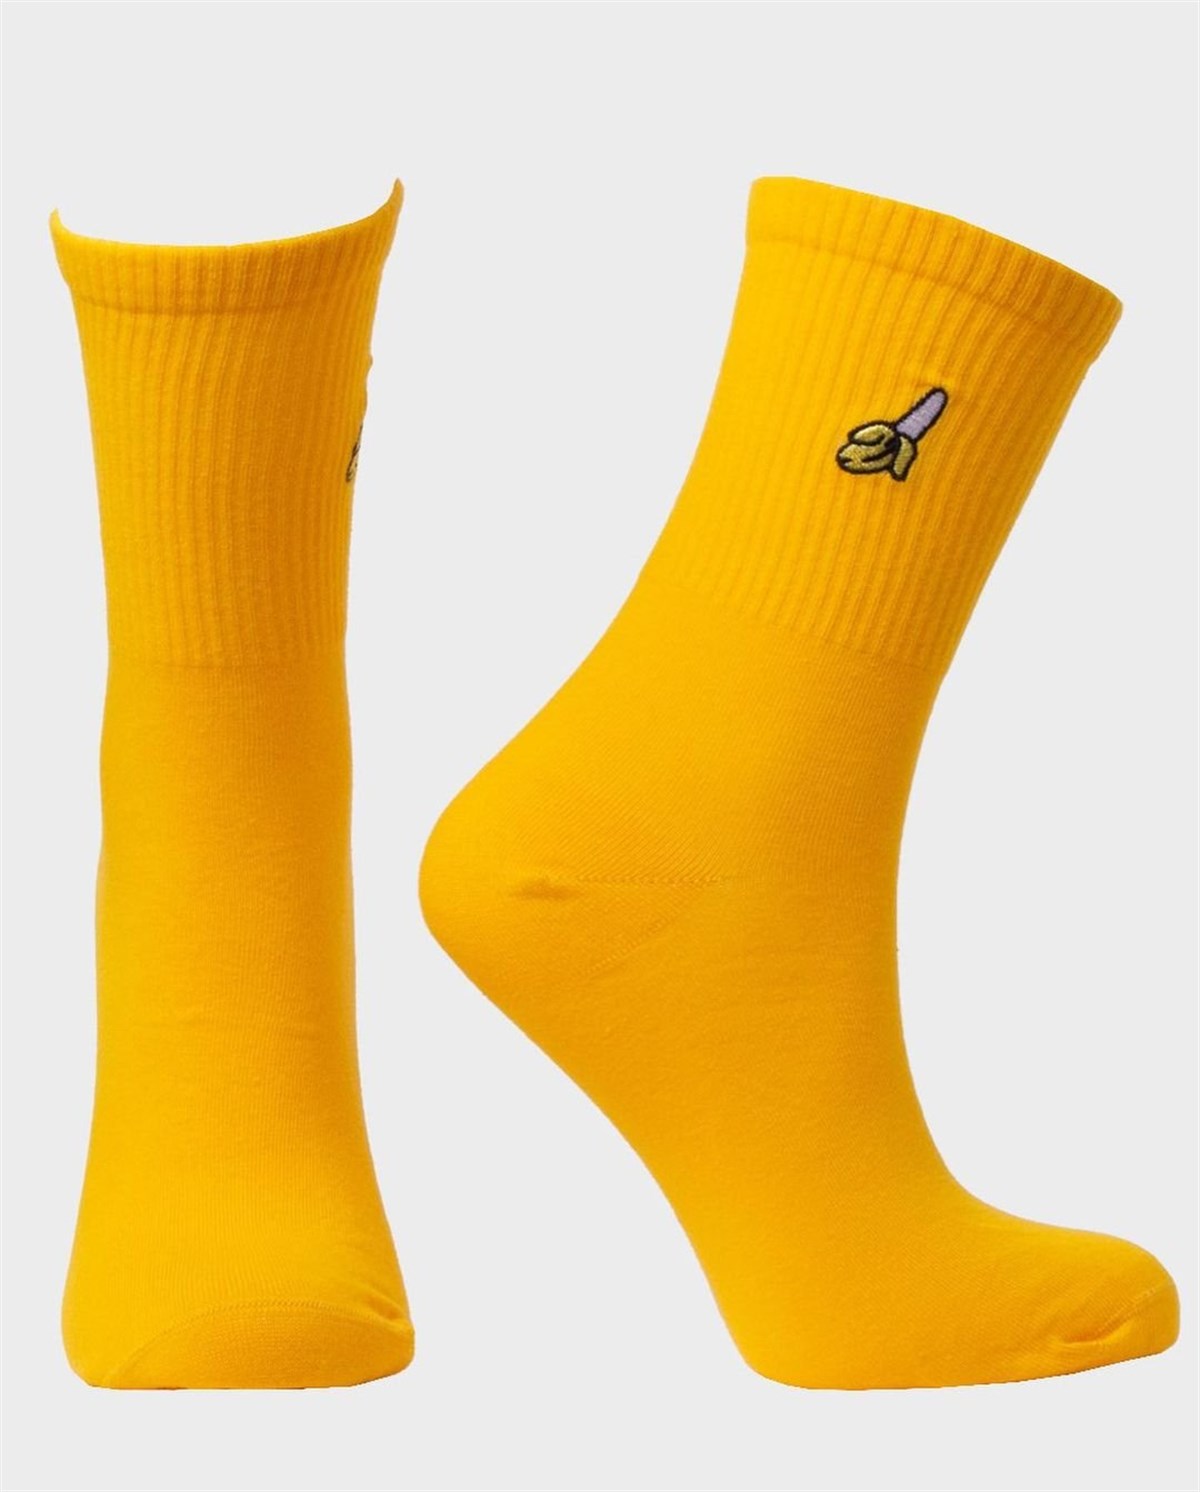 Muz Nakışlı 1. Kalite Renkli Pamuklu Takviyeli Unisex Çorap